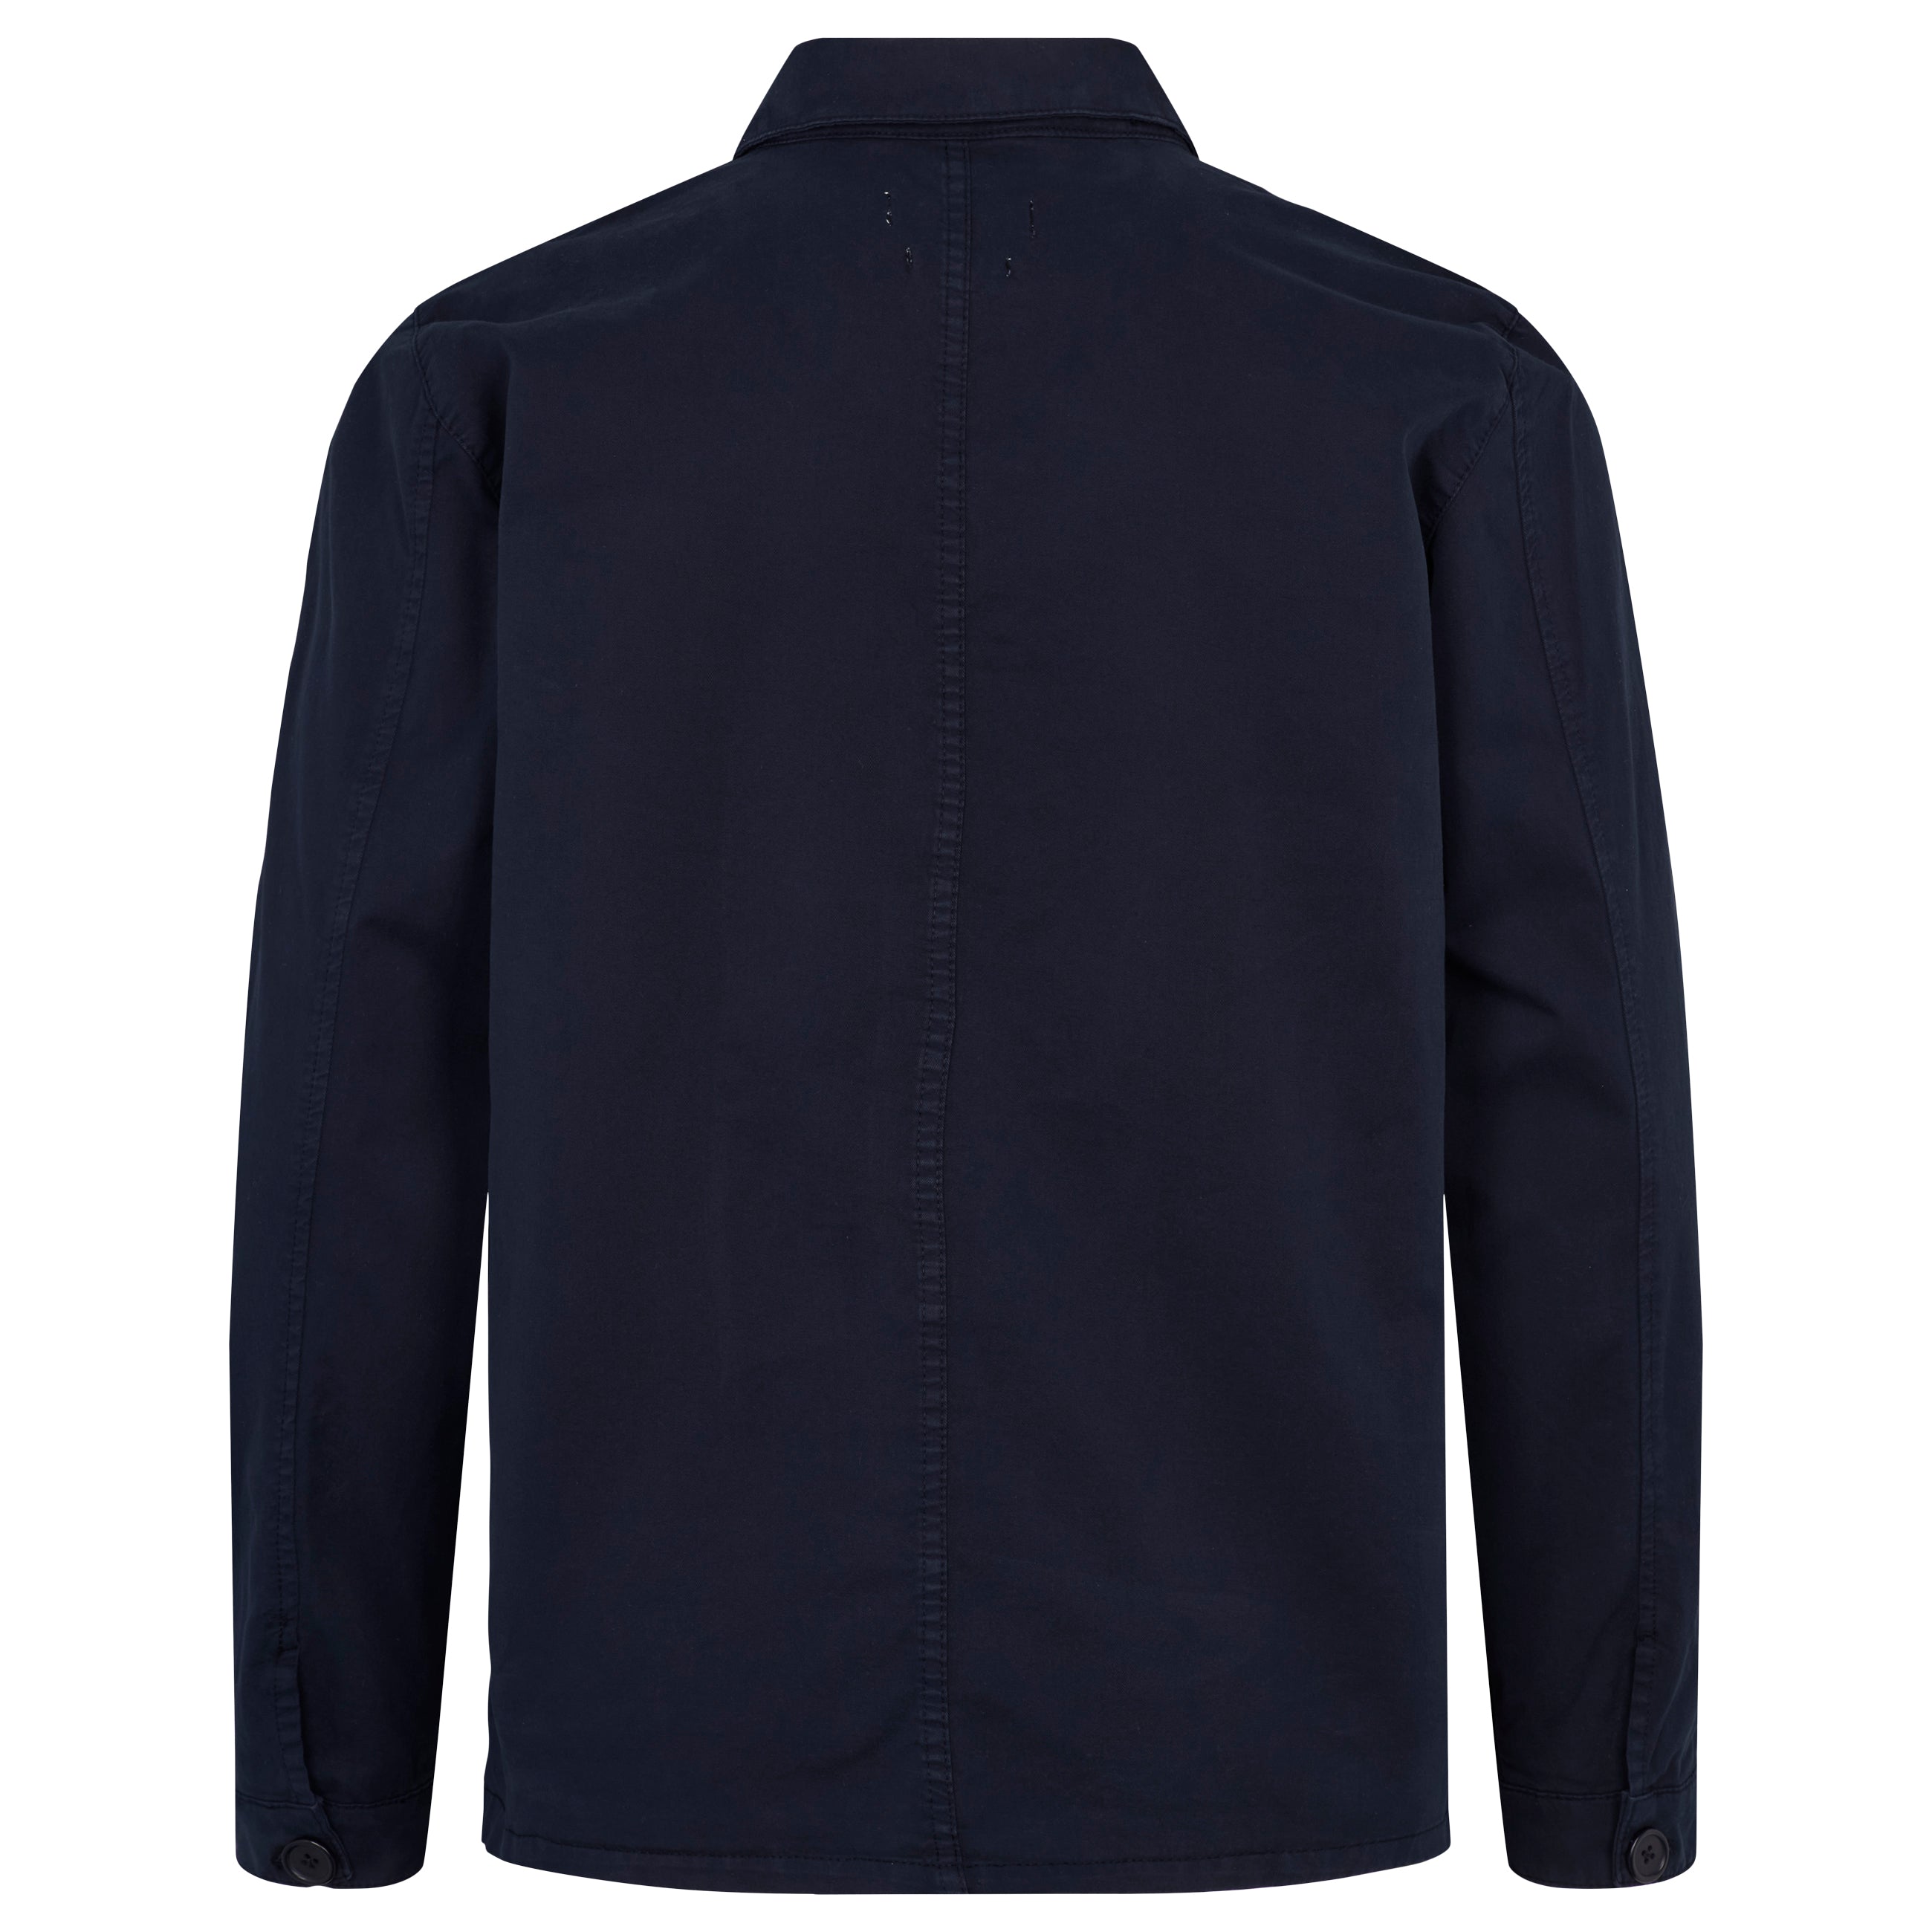 By Garment Makers The Organic Workwear Jacke GOTS Jacke 3096 Navy Blazer